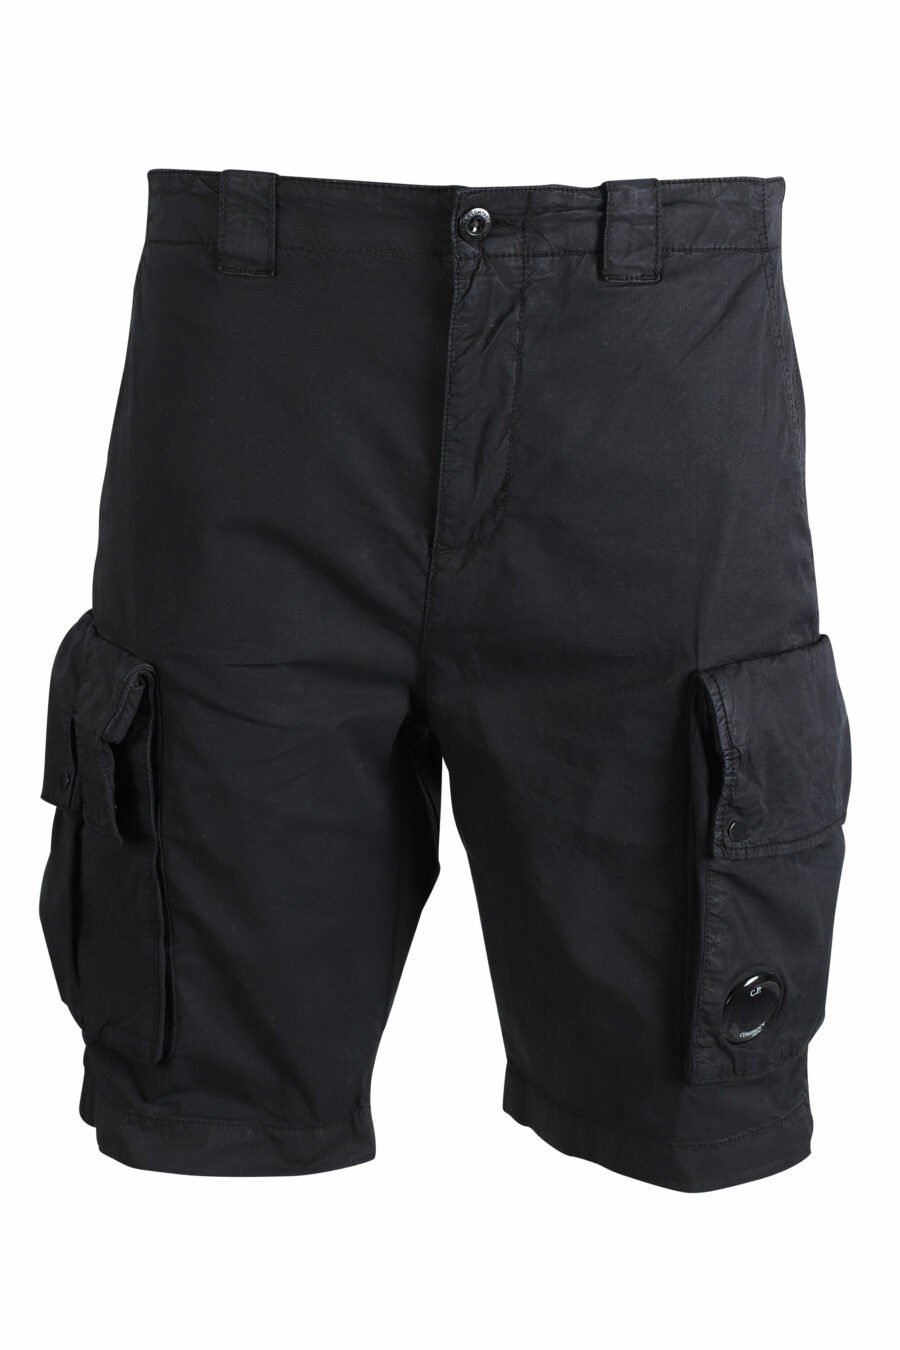 Schwarze Shorts mit Seitentaschen und rundem Mini-Logo - IMG 9478